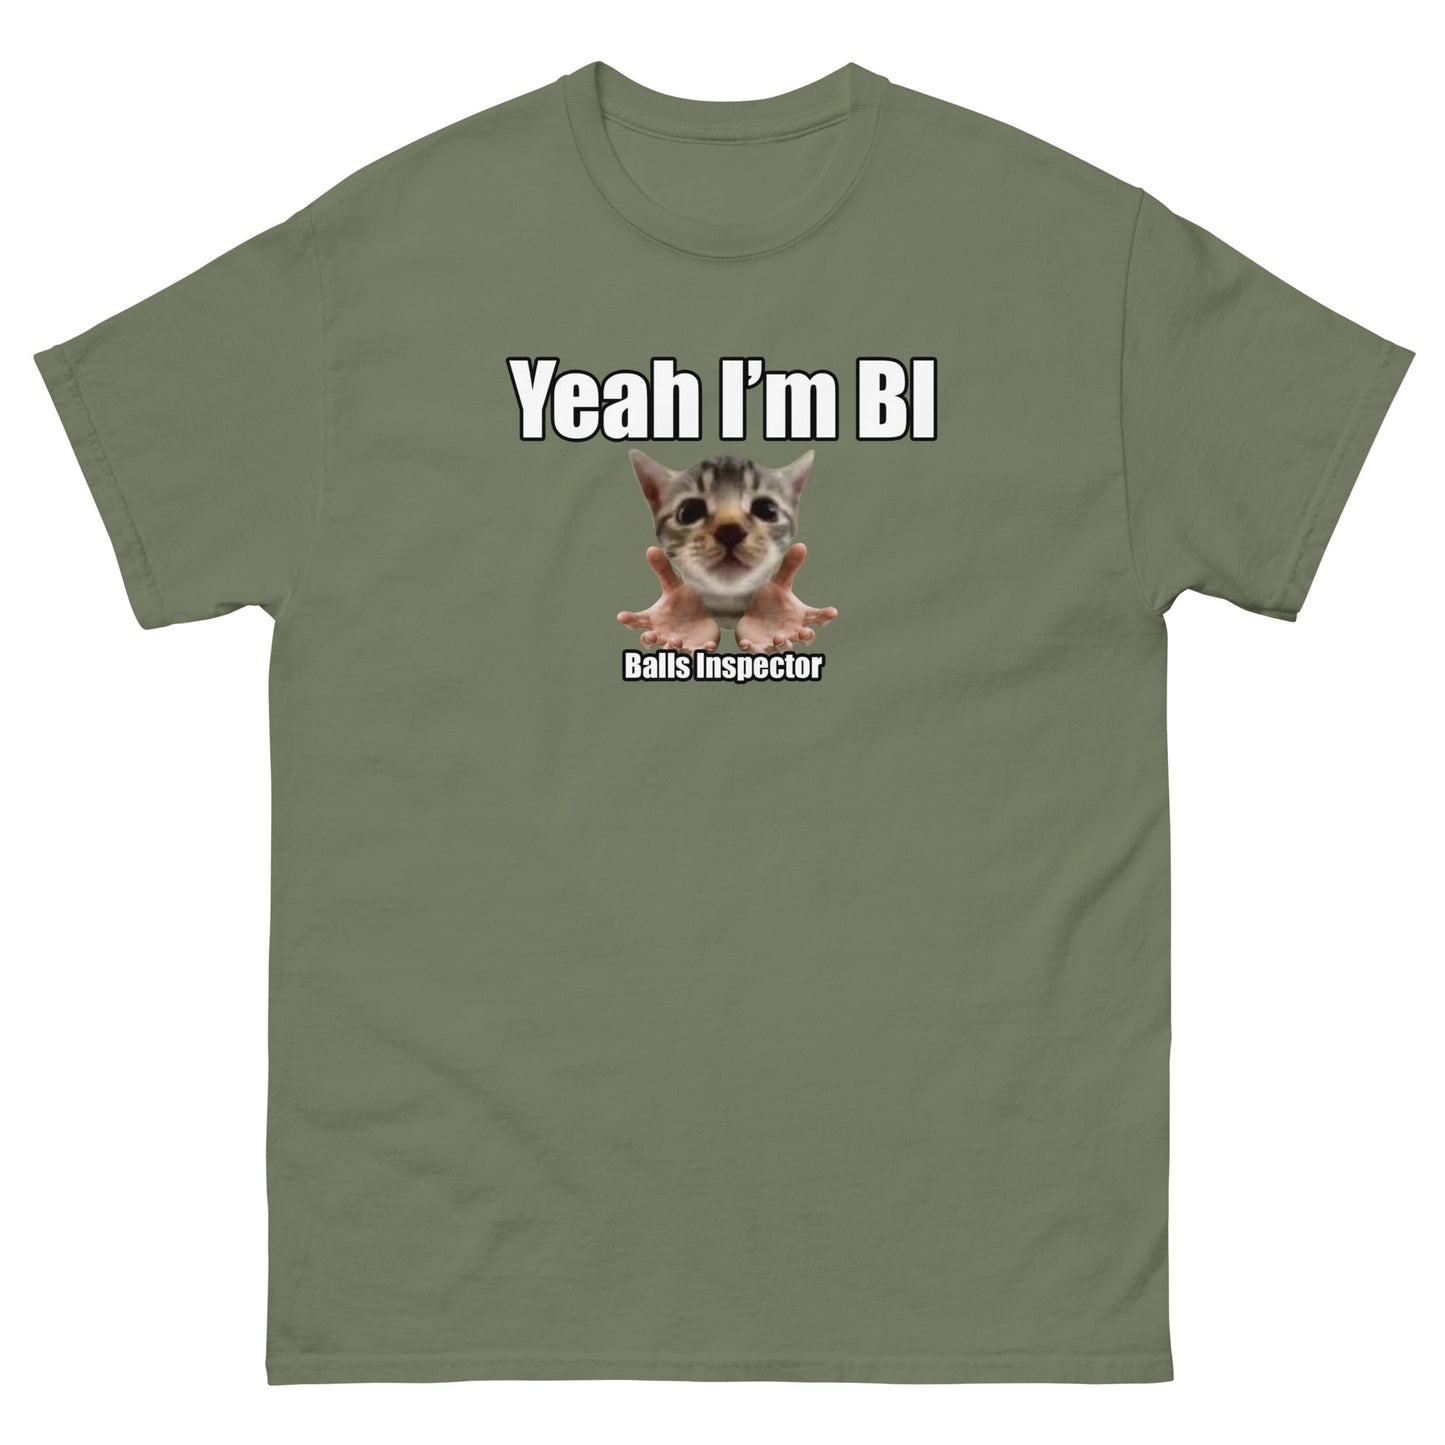 T-shirt Inspecteur de balles (BI)